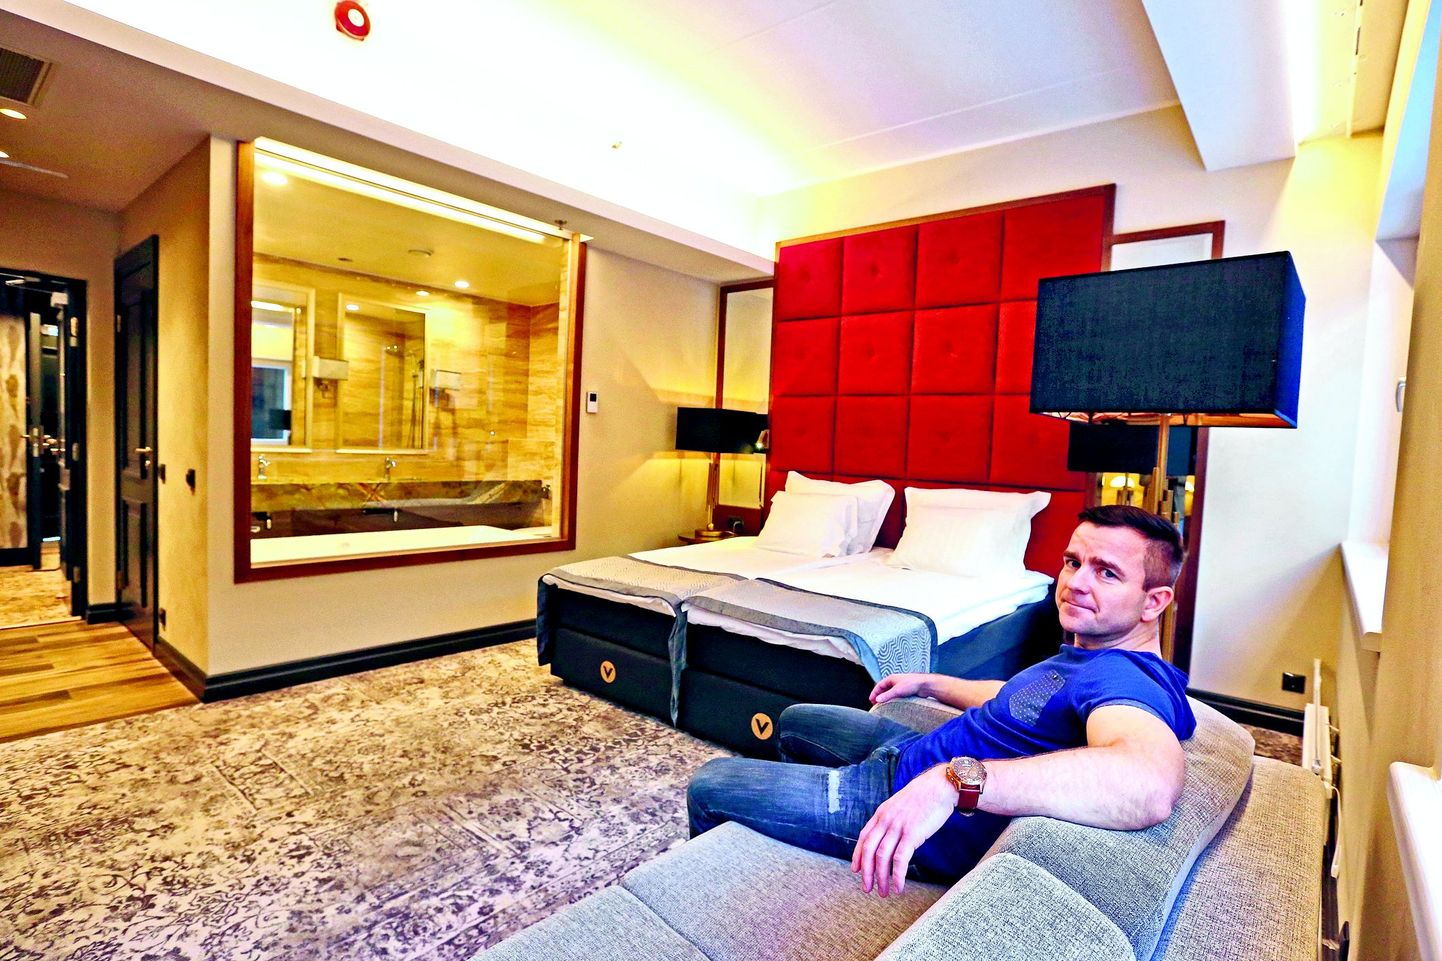 V spaahotelli toad on luksuslikud ja moodsad, kinnitab juhatuse liige Viljo Naar.